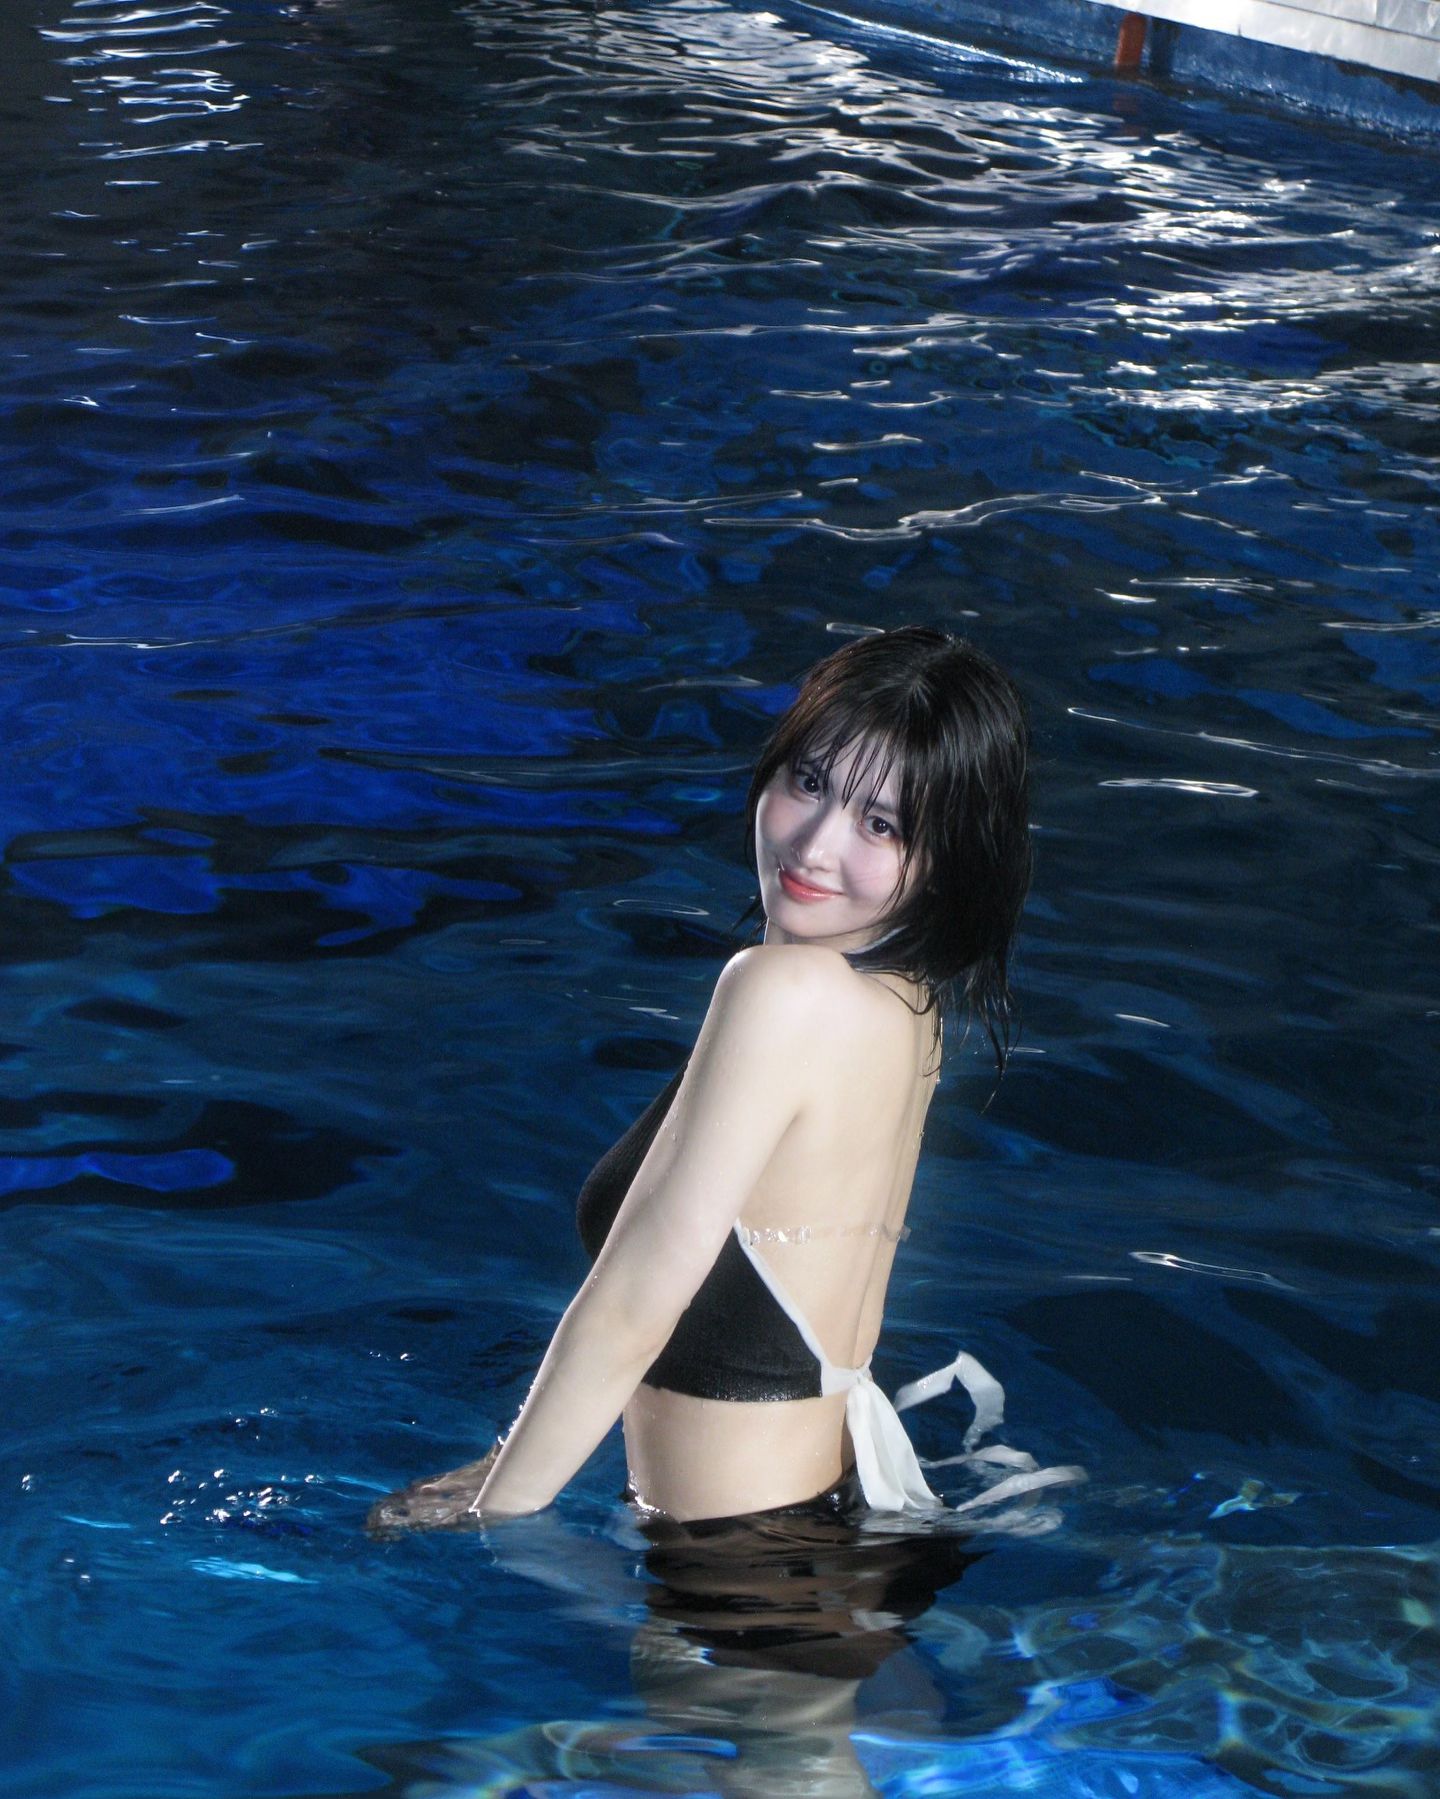 스쿠버다이빙 하는 트와이스 모모 검정 투피스 수영복 탄탄한 몸매